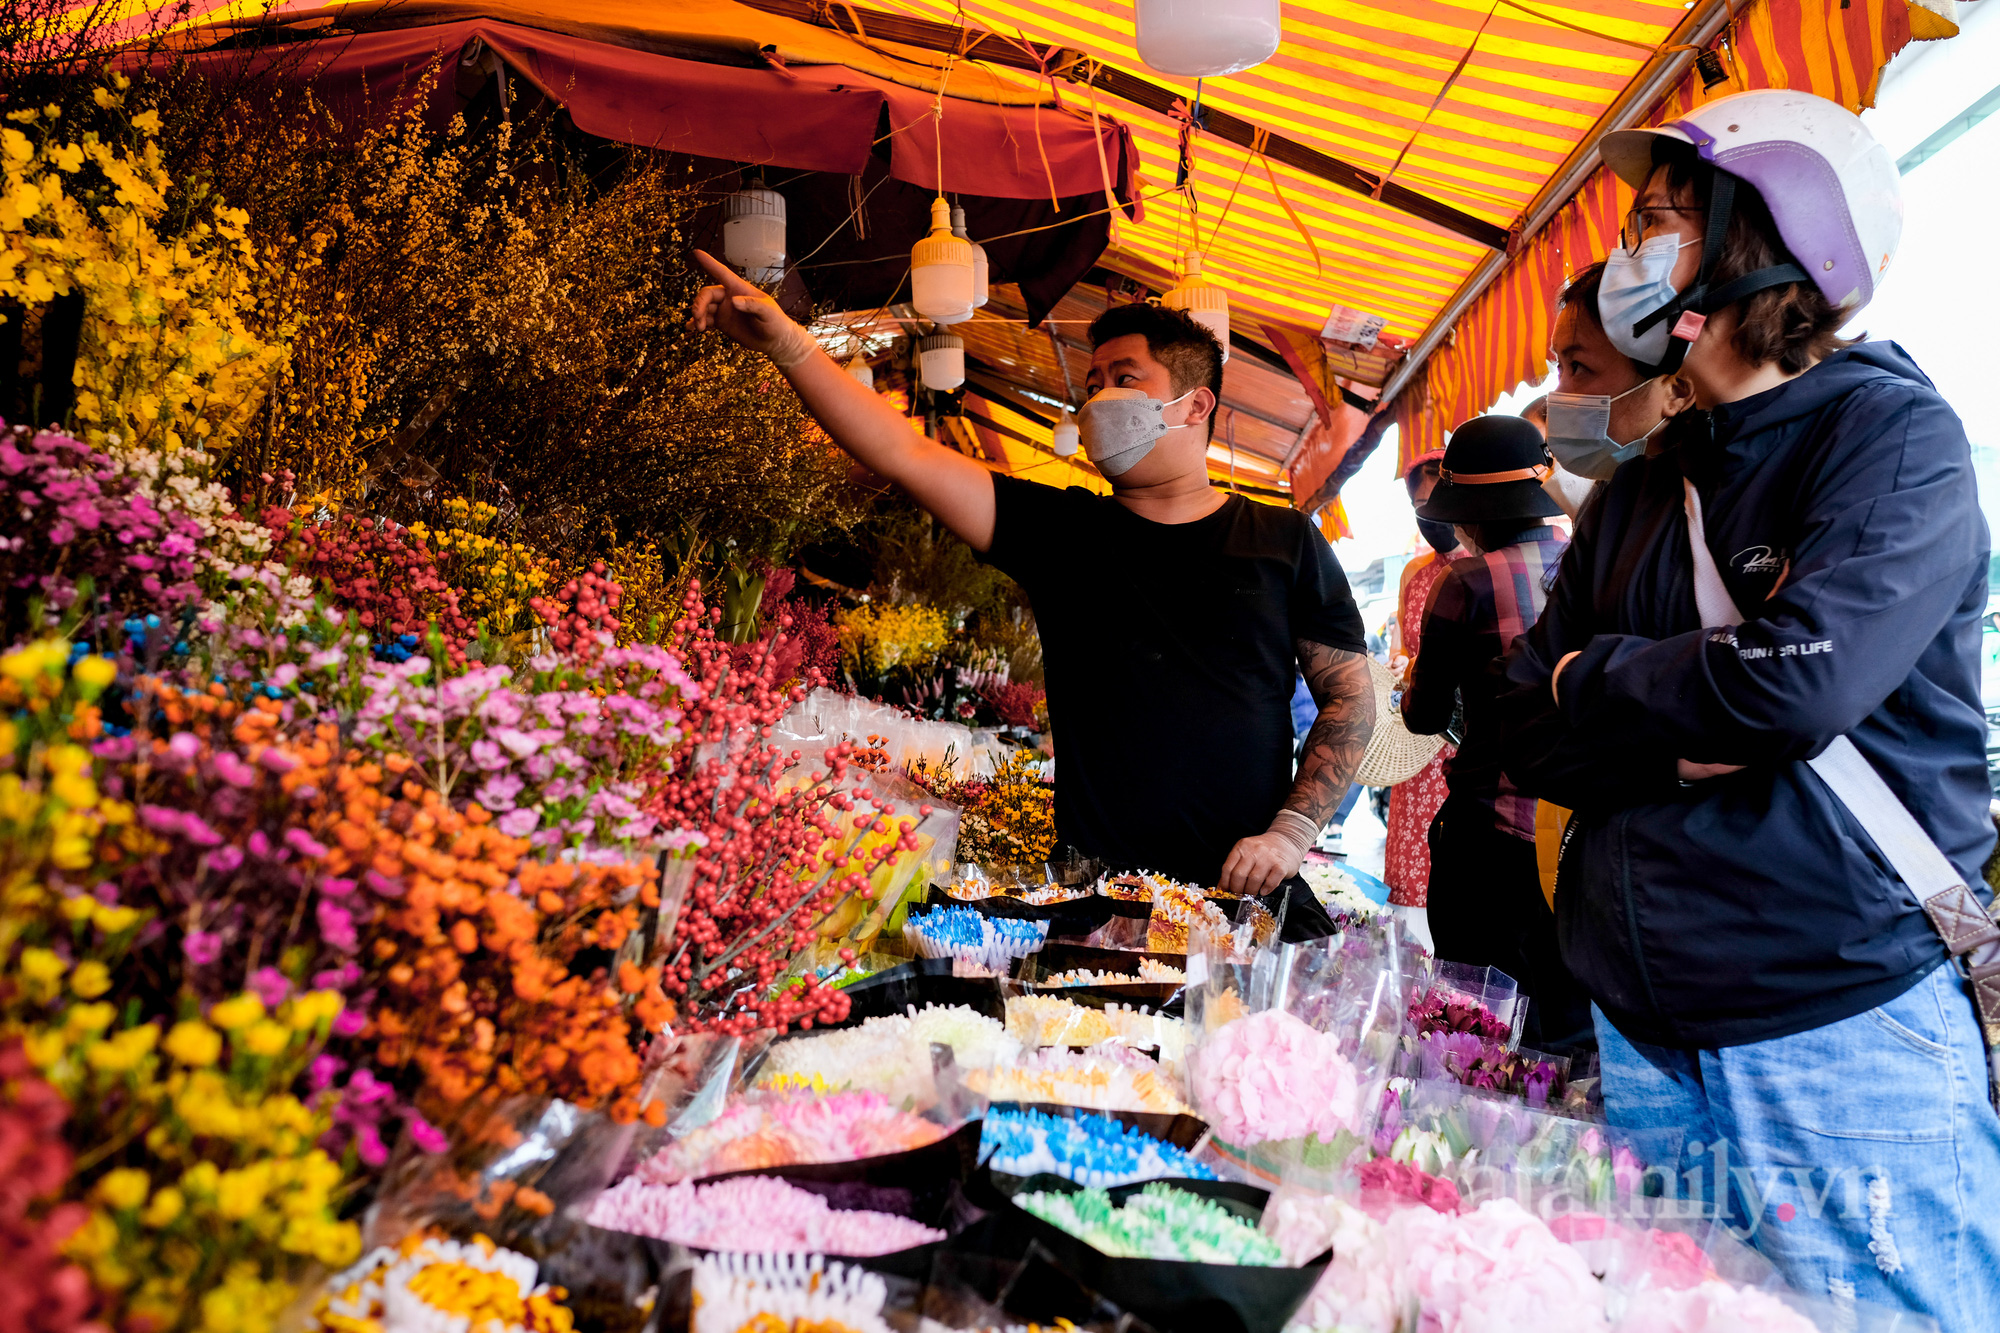 29 Tết đi chợ hoa Quảng Bá: Giá hoa tăng 20% so với ngày thường, mua nhanh 5 cành đào đông cắm đẹp nhà mà hết 2,2 triệu - Ảnh 15.